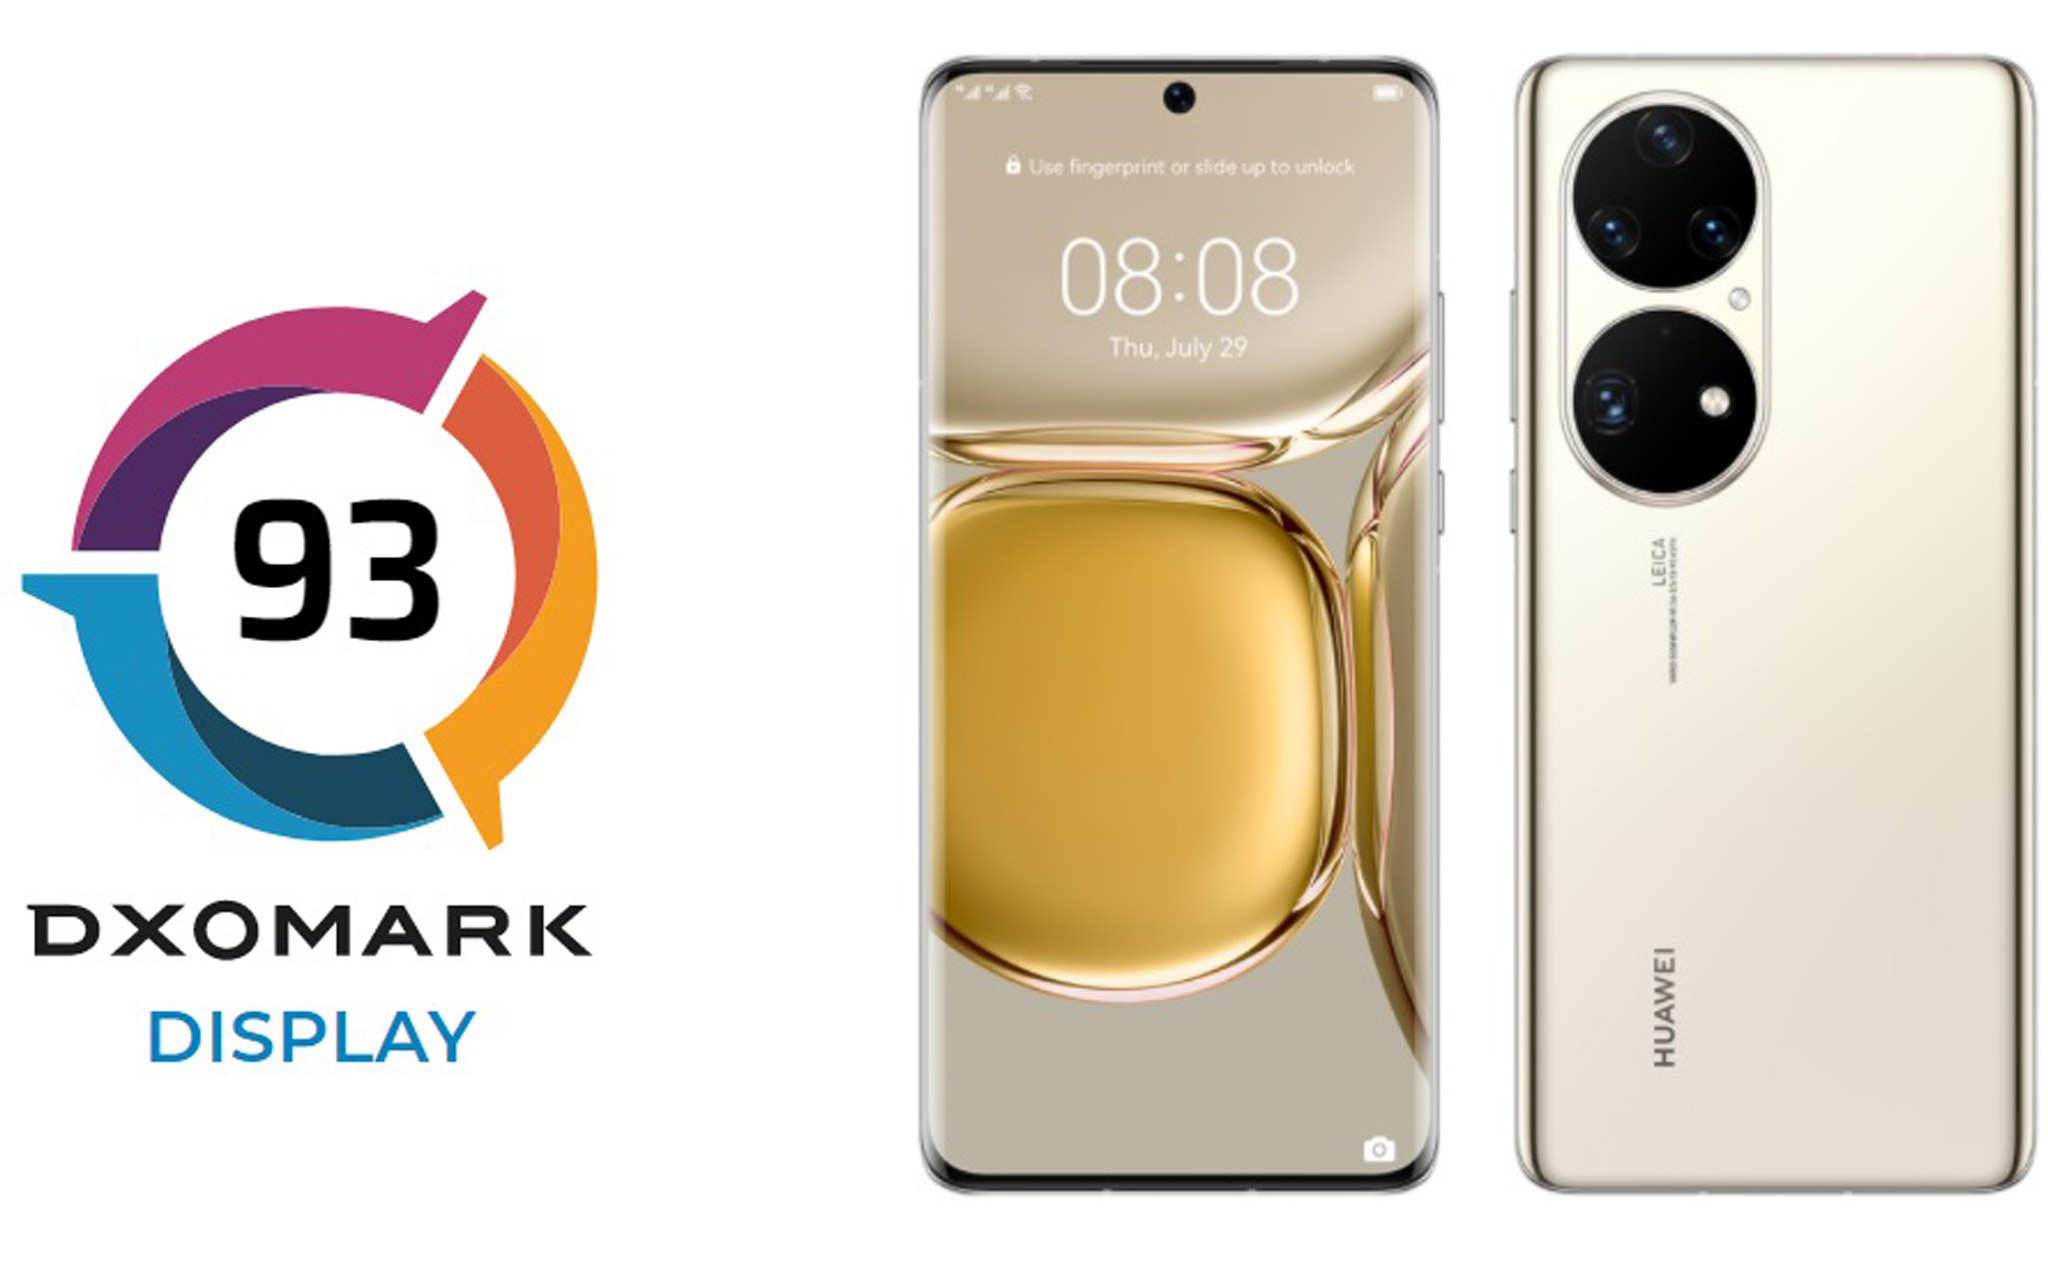 Vượt qua S21 Ultra, Huawei P50 Pro là smartphone có màn hình đẹp nhất theo đánh giá của DxOmark